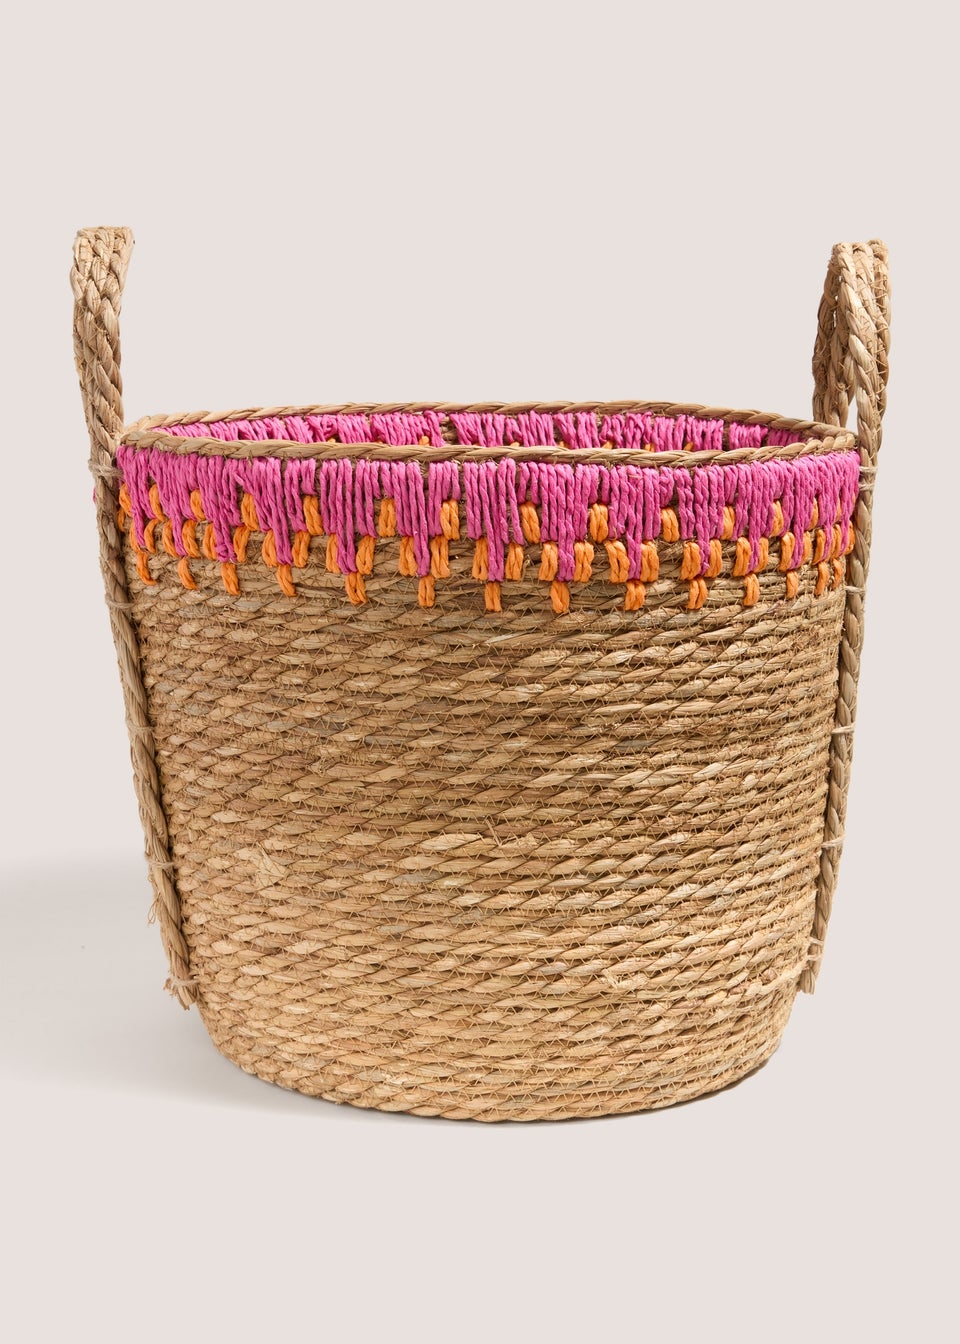 Multicolour Global Basket (40cm x 40cm x 33cm)